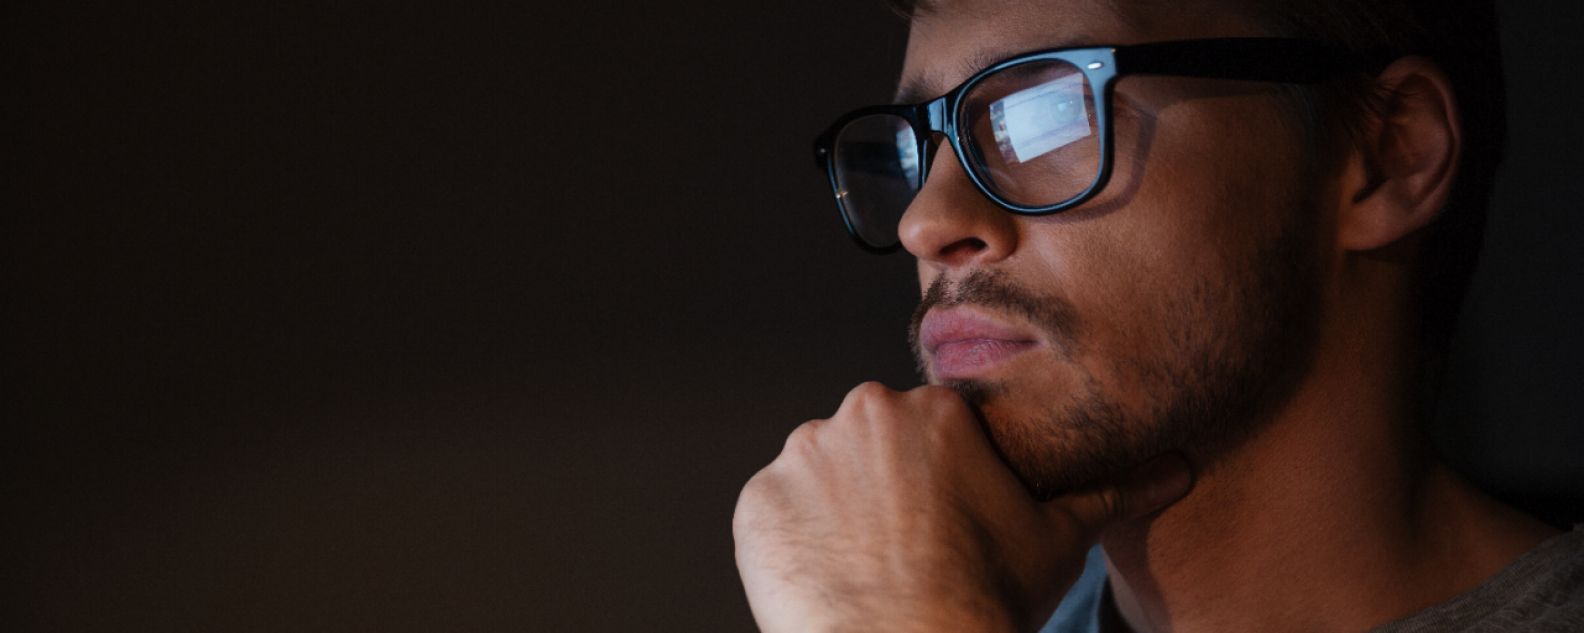 Primer plano de un hombre pensativo con una pantalla de computadora reflejada en sus gafas